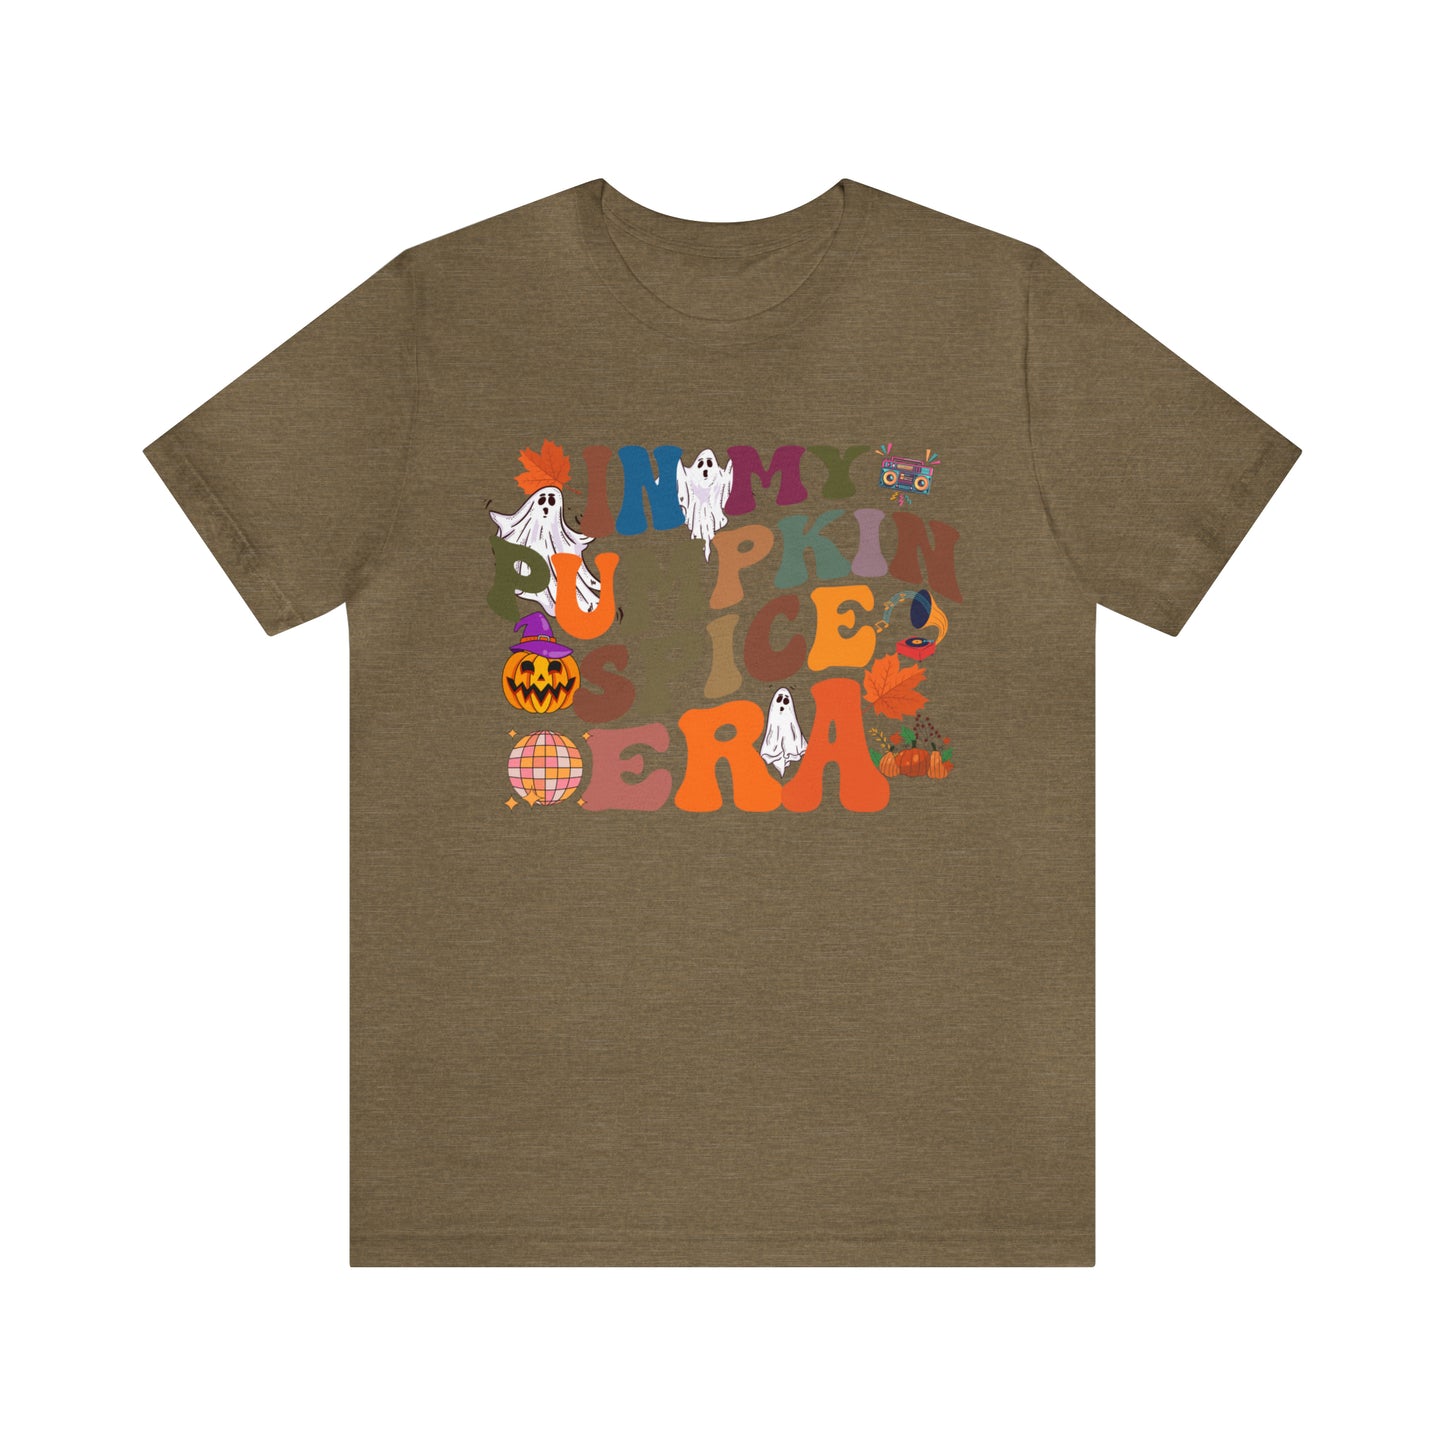 In My Pumpkin Spice Era Shirt, Halloween Pumpkin Shirt, Retro Fall Vibes Pumpkin Shirt, Pumpkin Season Shirt, Hey There Pumpkin Shirt, T786